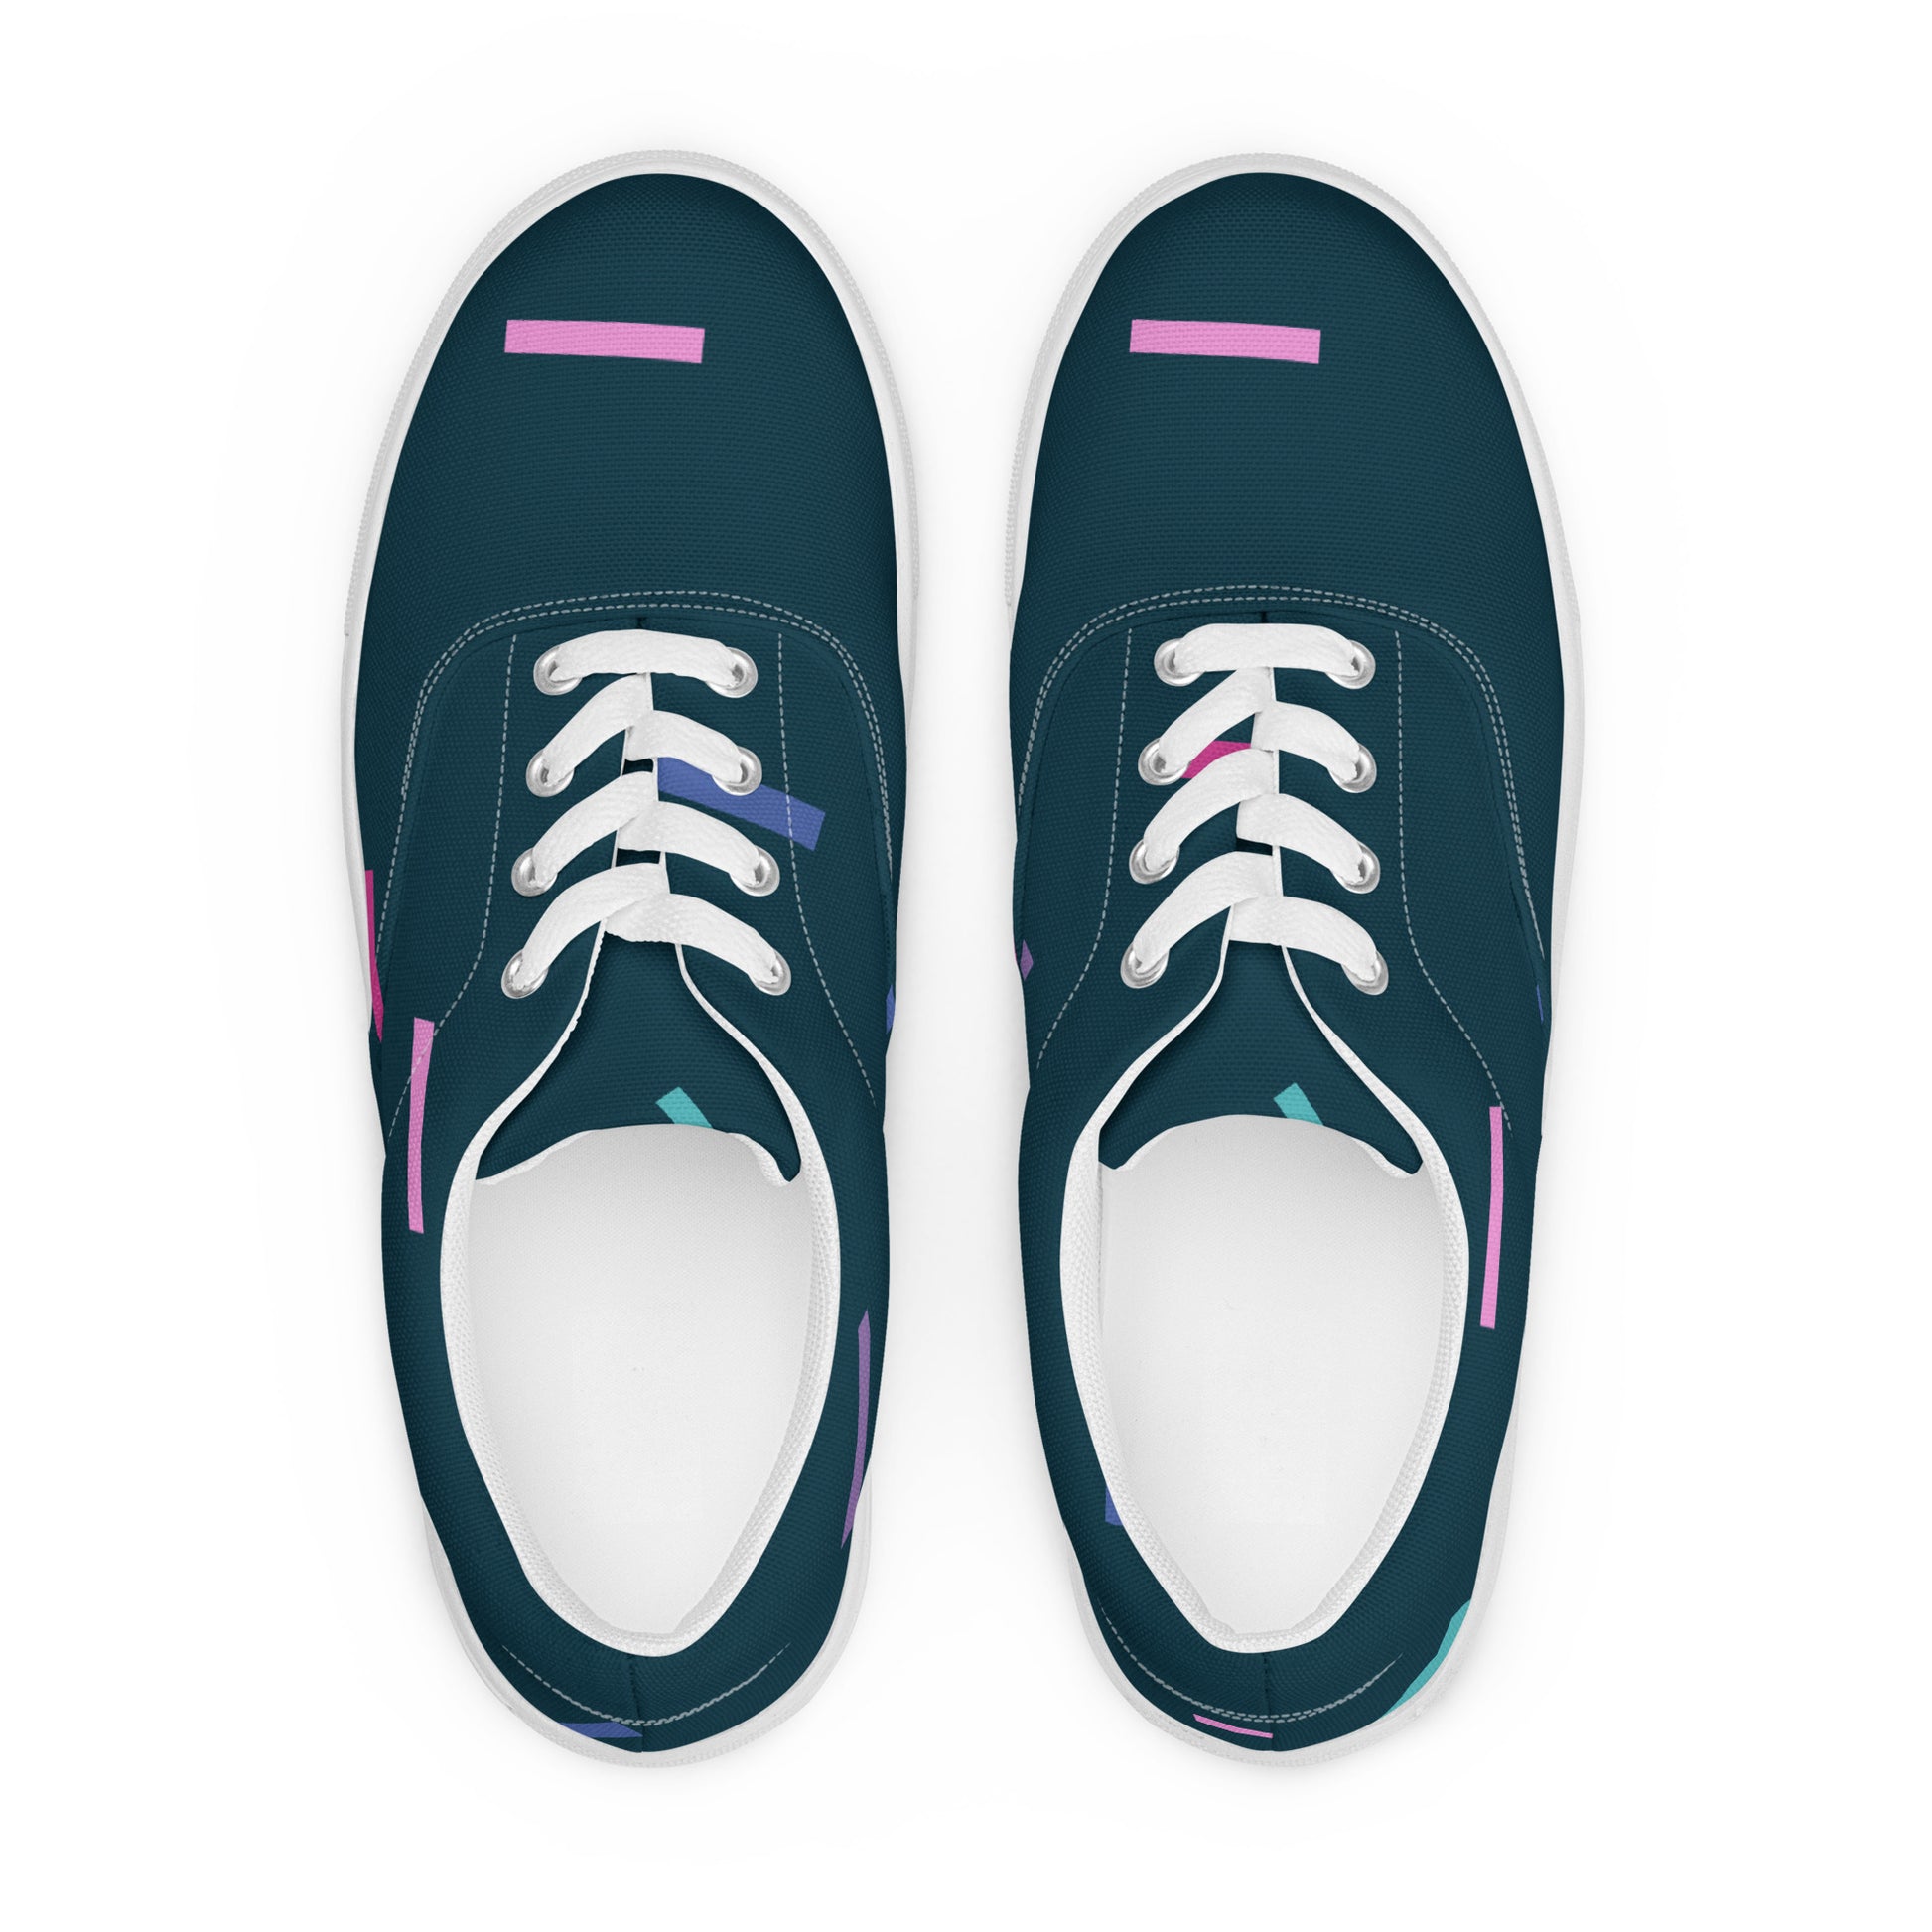 Dark Confetti Men’s lace-up canvas shoes - Kickstart Fragrances